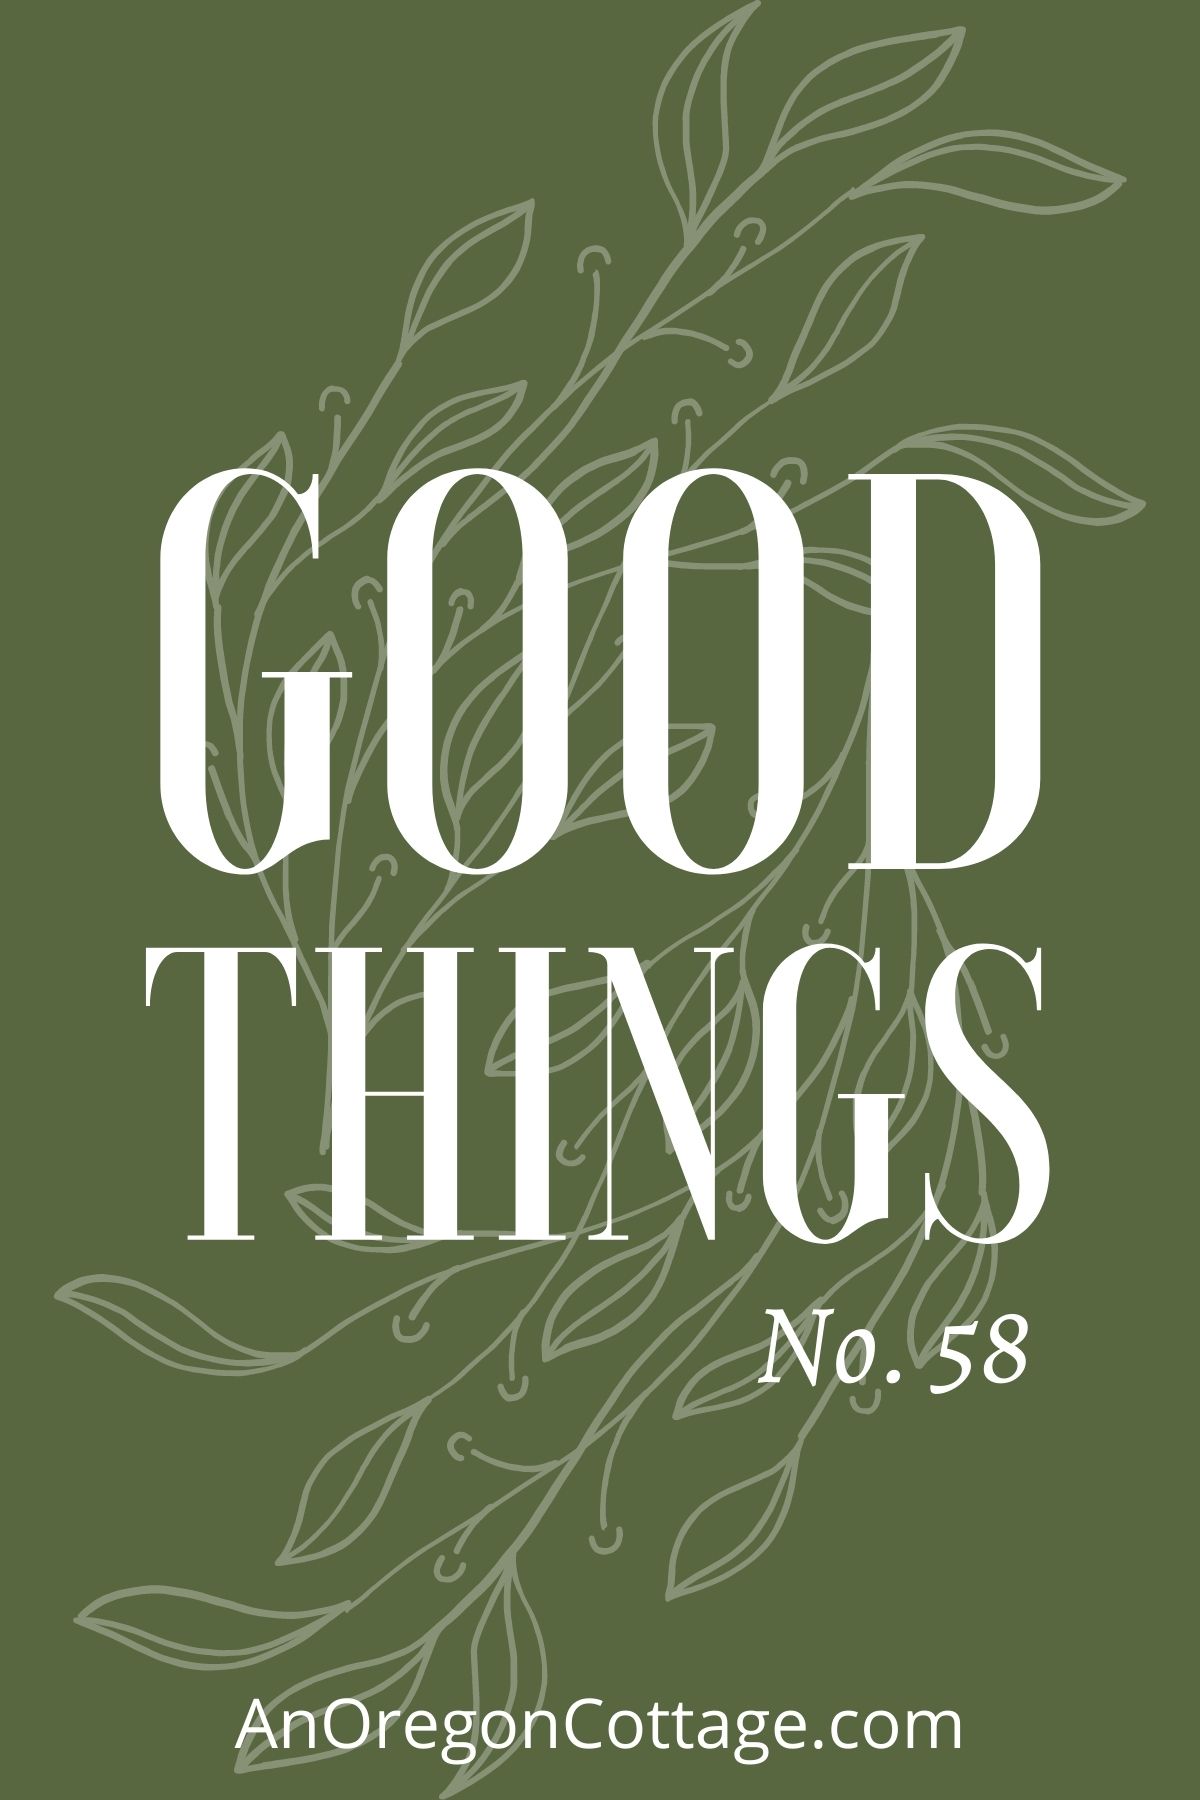 Good things list No.58